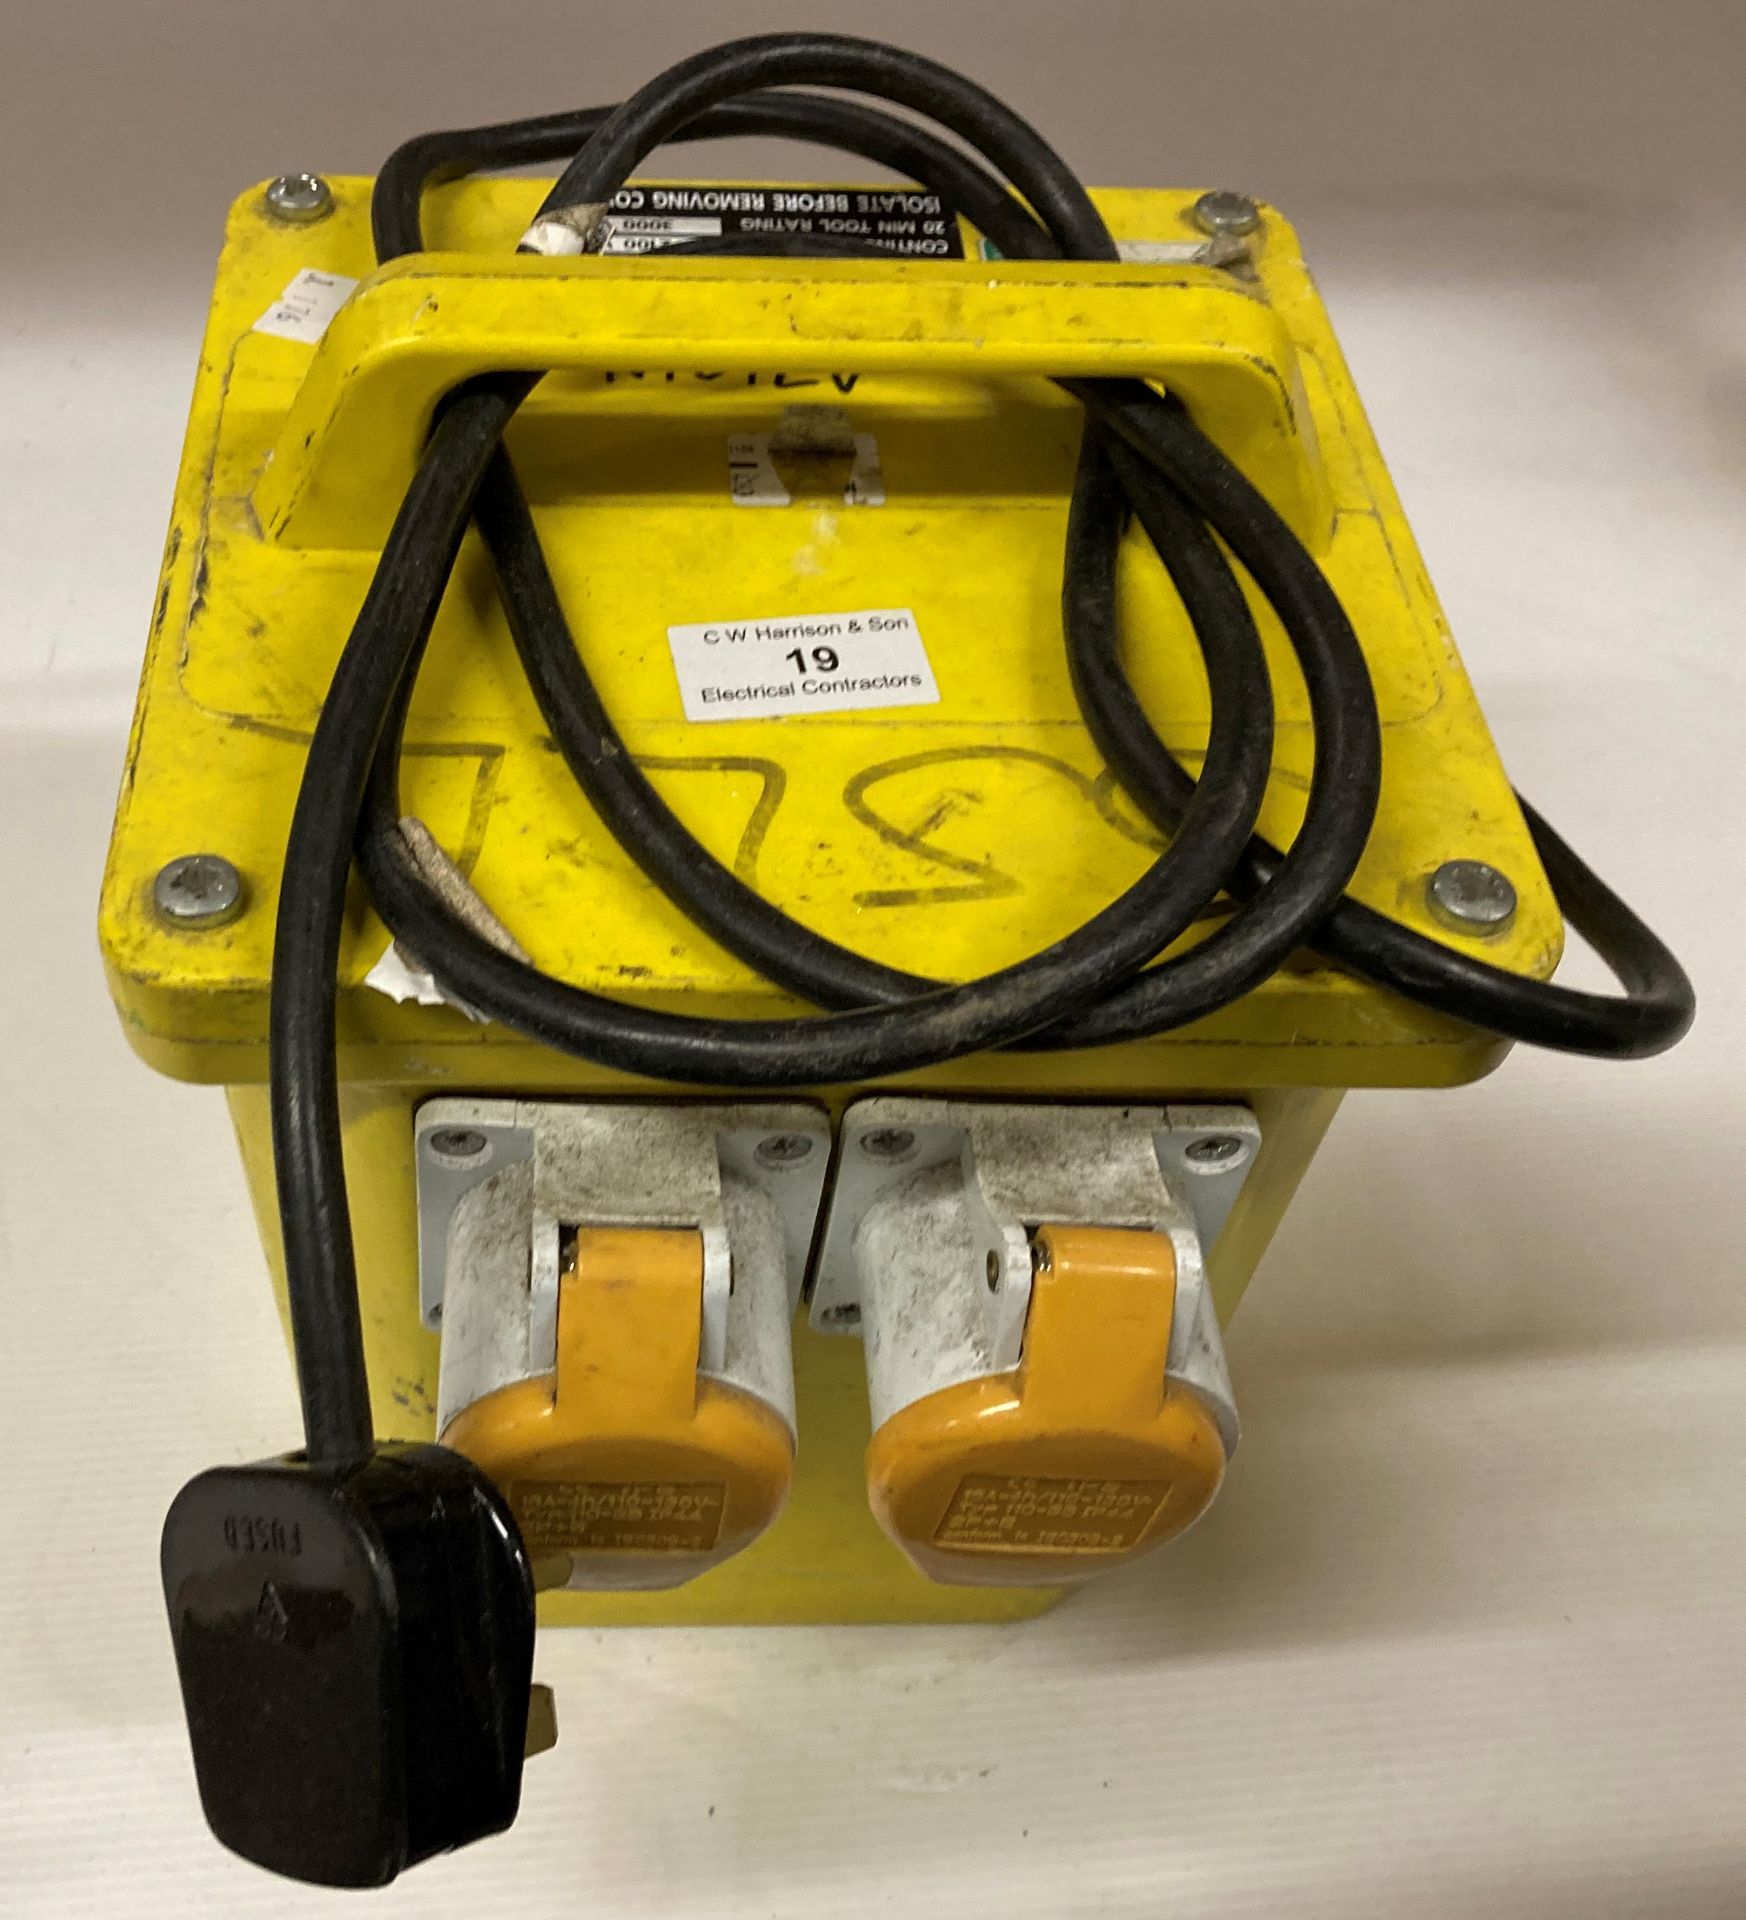 Newlec 110v twin port transformer (240v) (needs rewire,